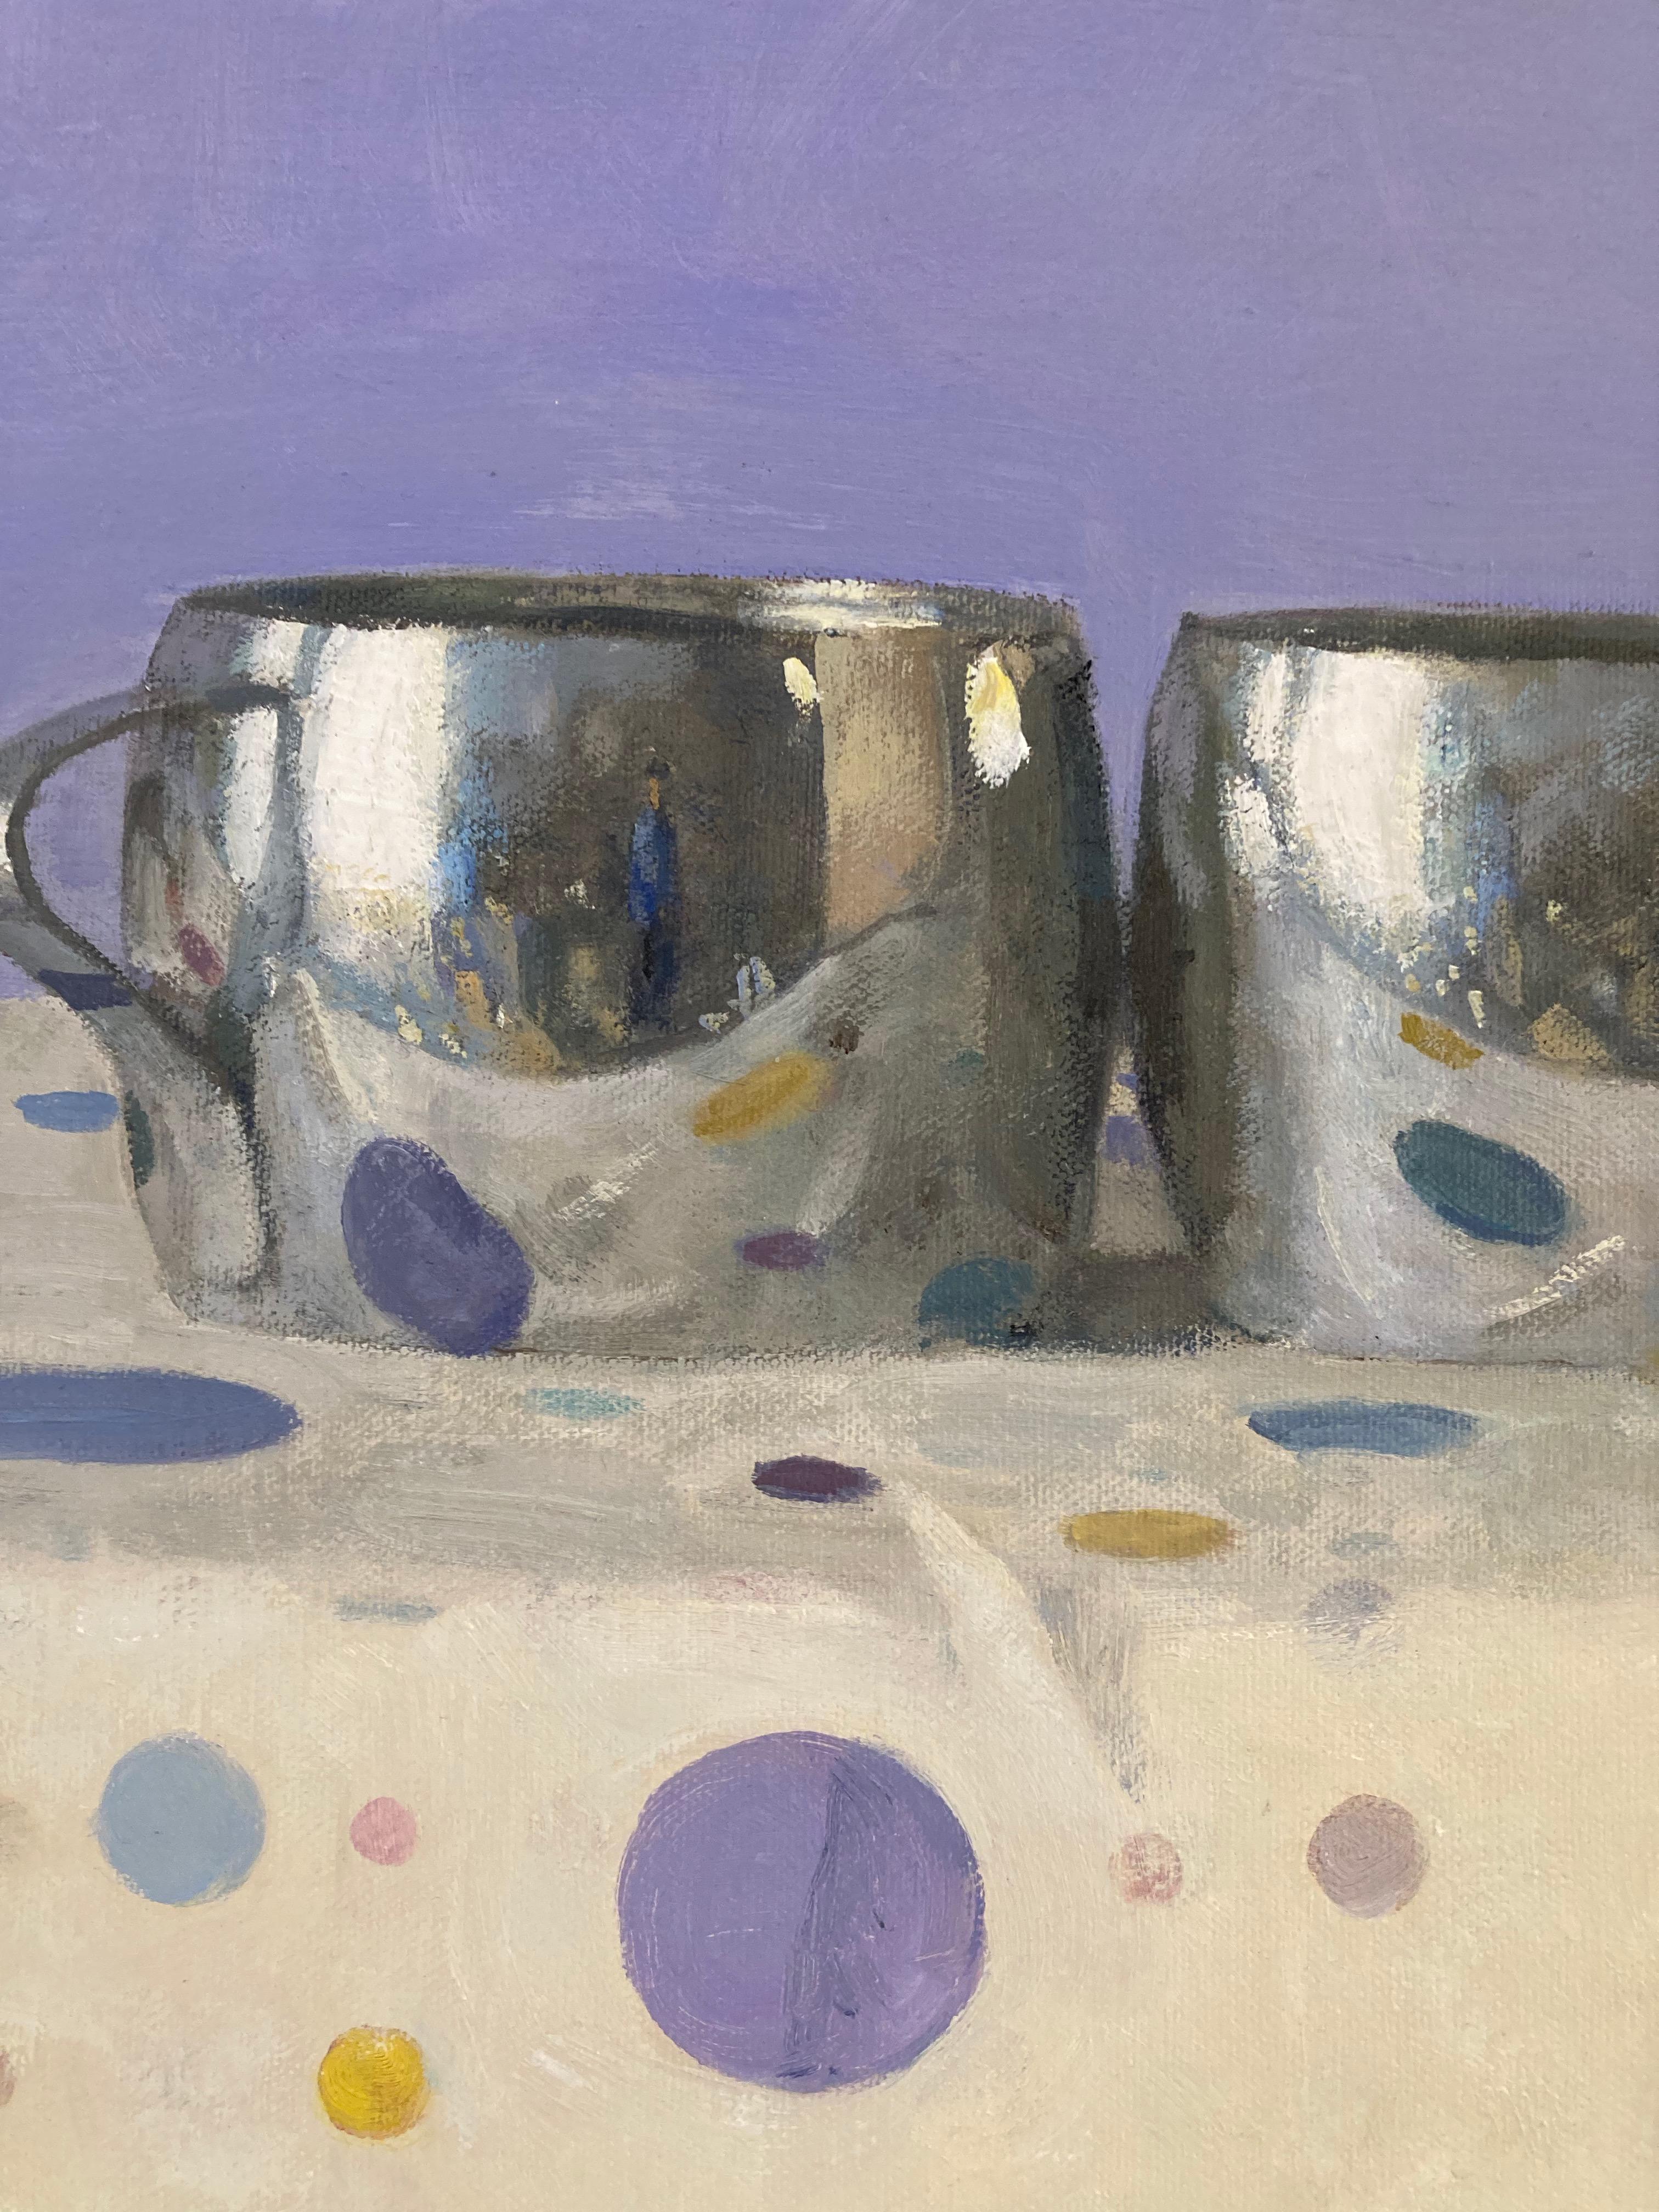 Zwei silberne Tassen, Porträt-Reflektionen, Tupfen, Lavendel, Gelb, Blau, Rosa